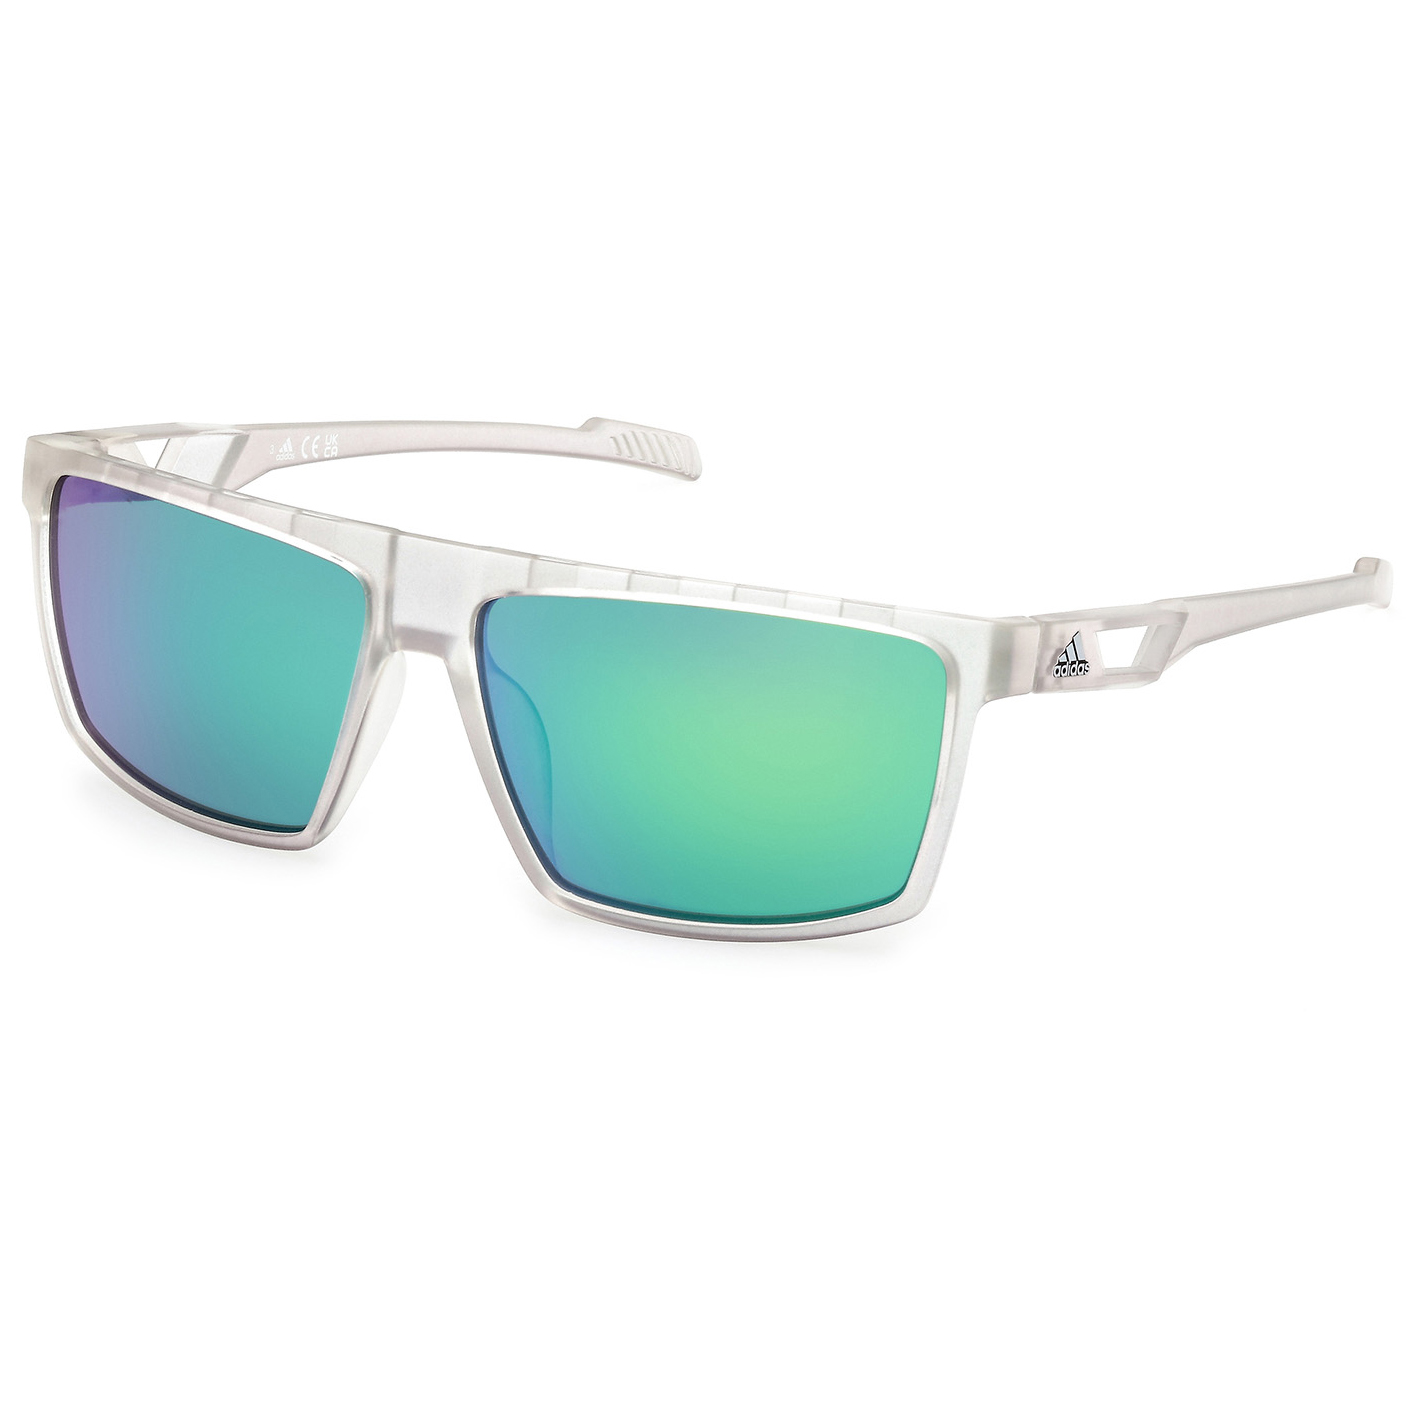 Солнцезащитные очки Adidas SP0083 Mirror Cat 3, цвет Crystal солнцезащитные очки adidas sp0083 mirror cat 3 цвет crystal